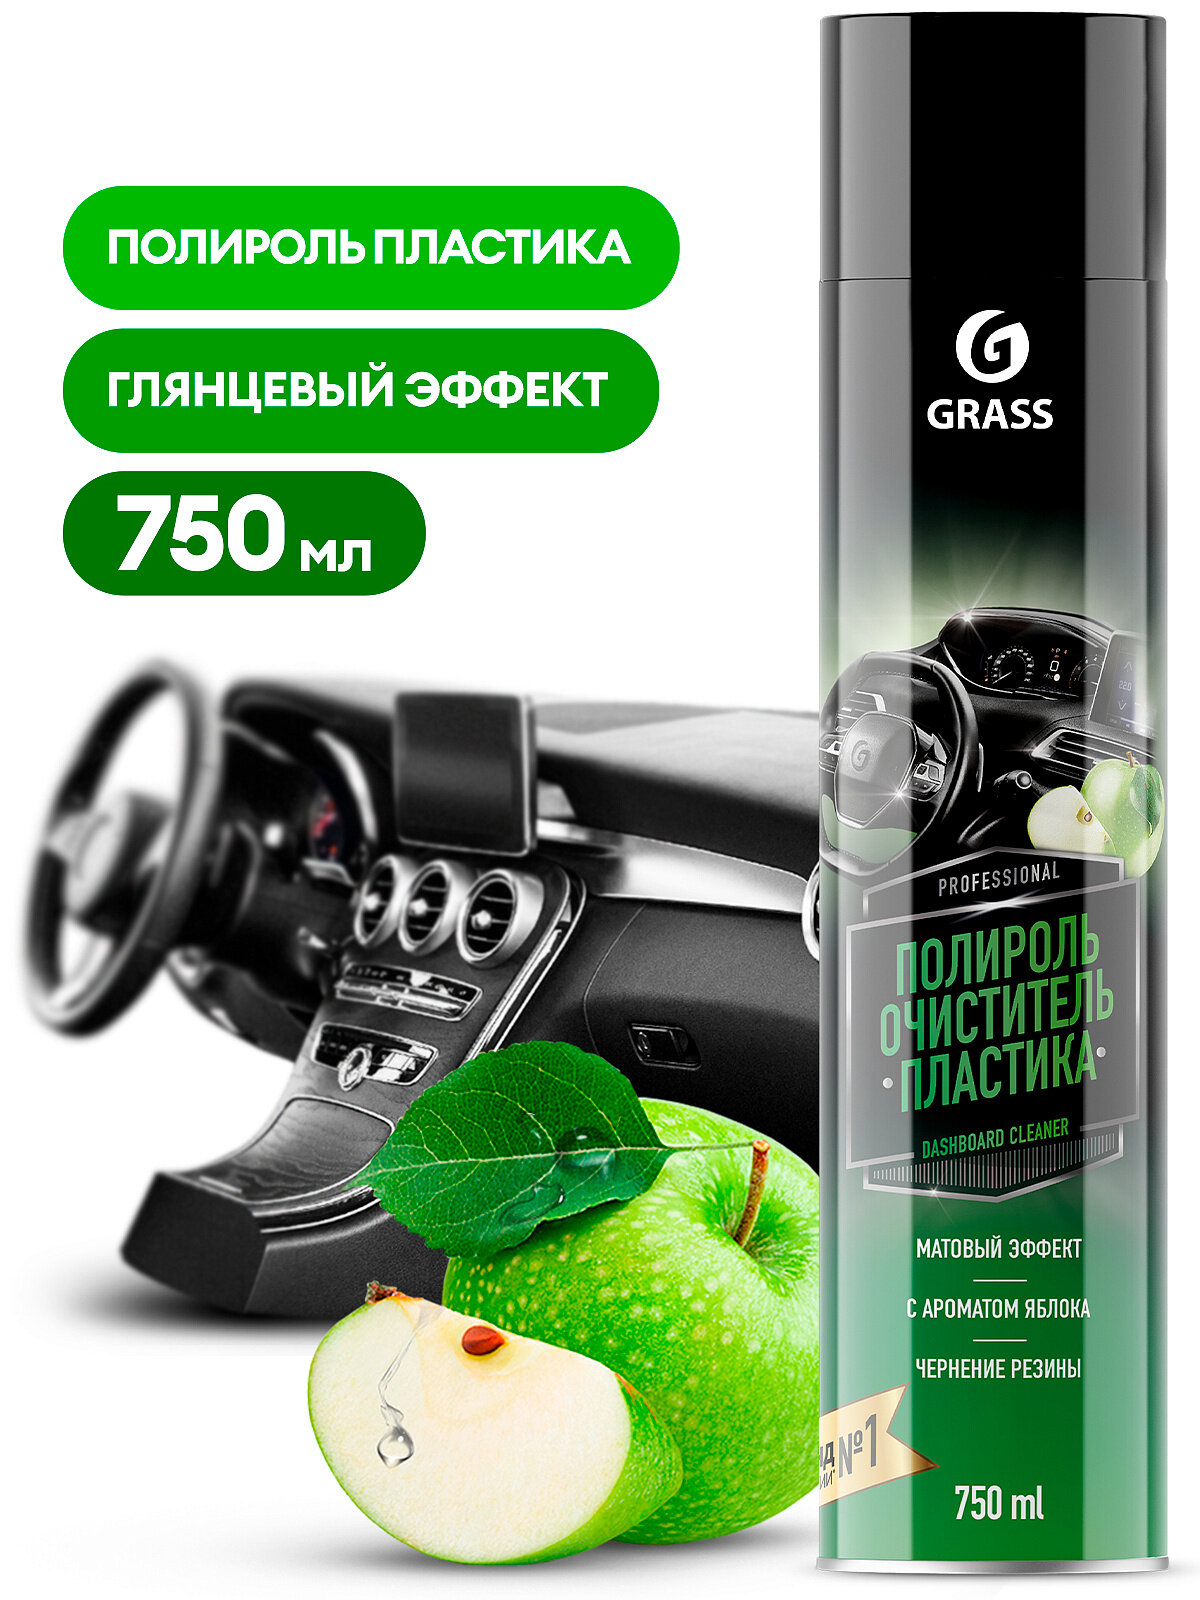 Полироль-очиститель пластика "Dashboard Cleaner" матовый блеск, яблоко (аэрозоль 750 мл) Grass - фото №9